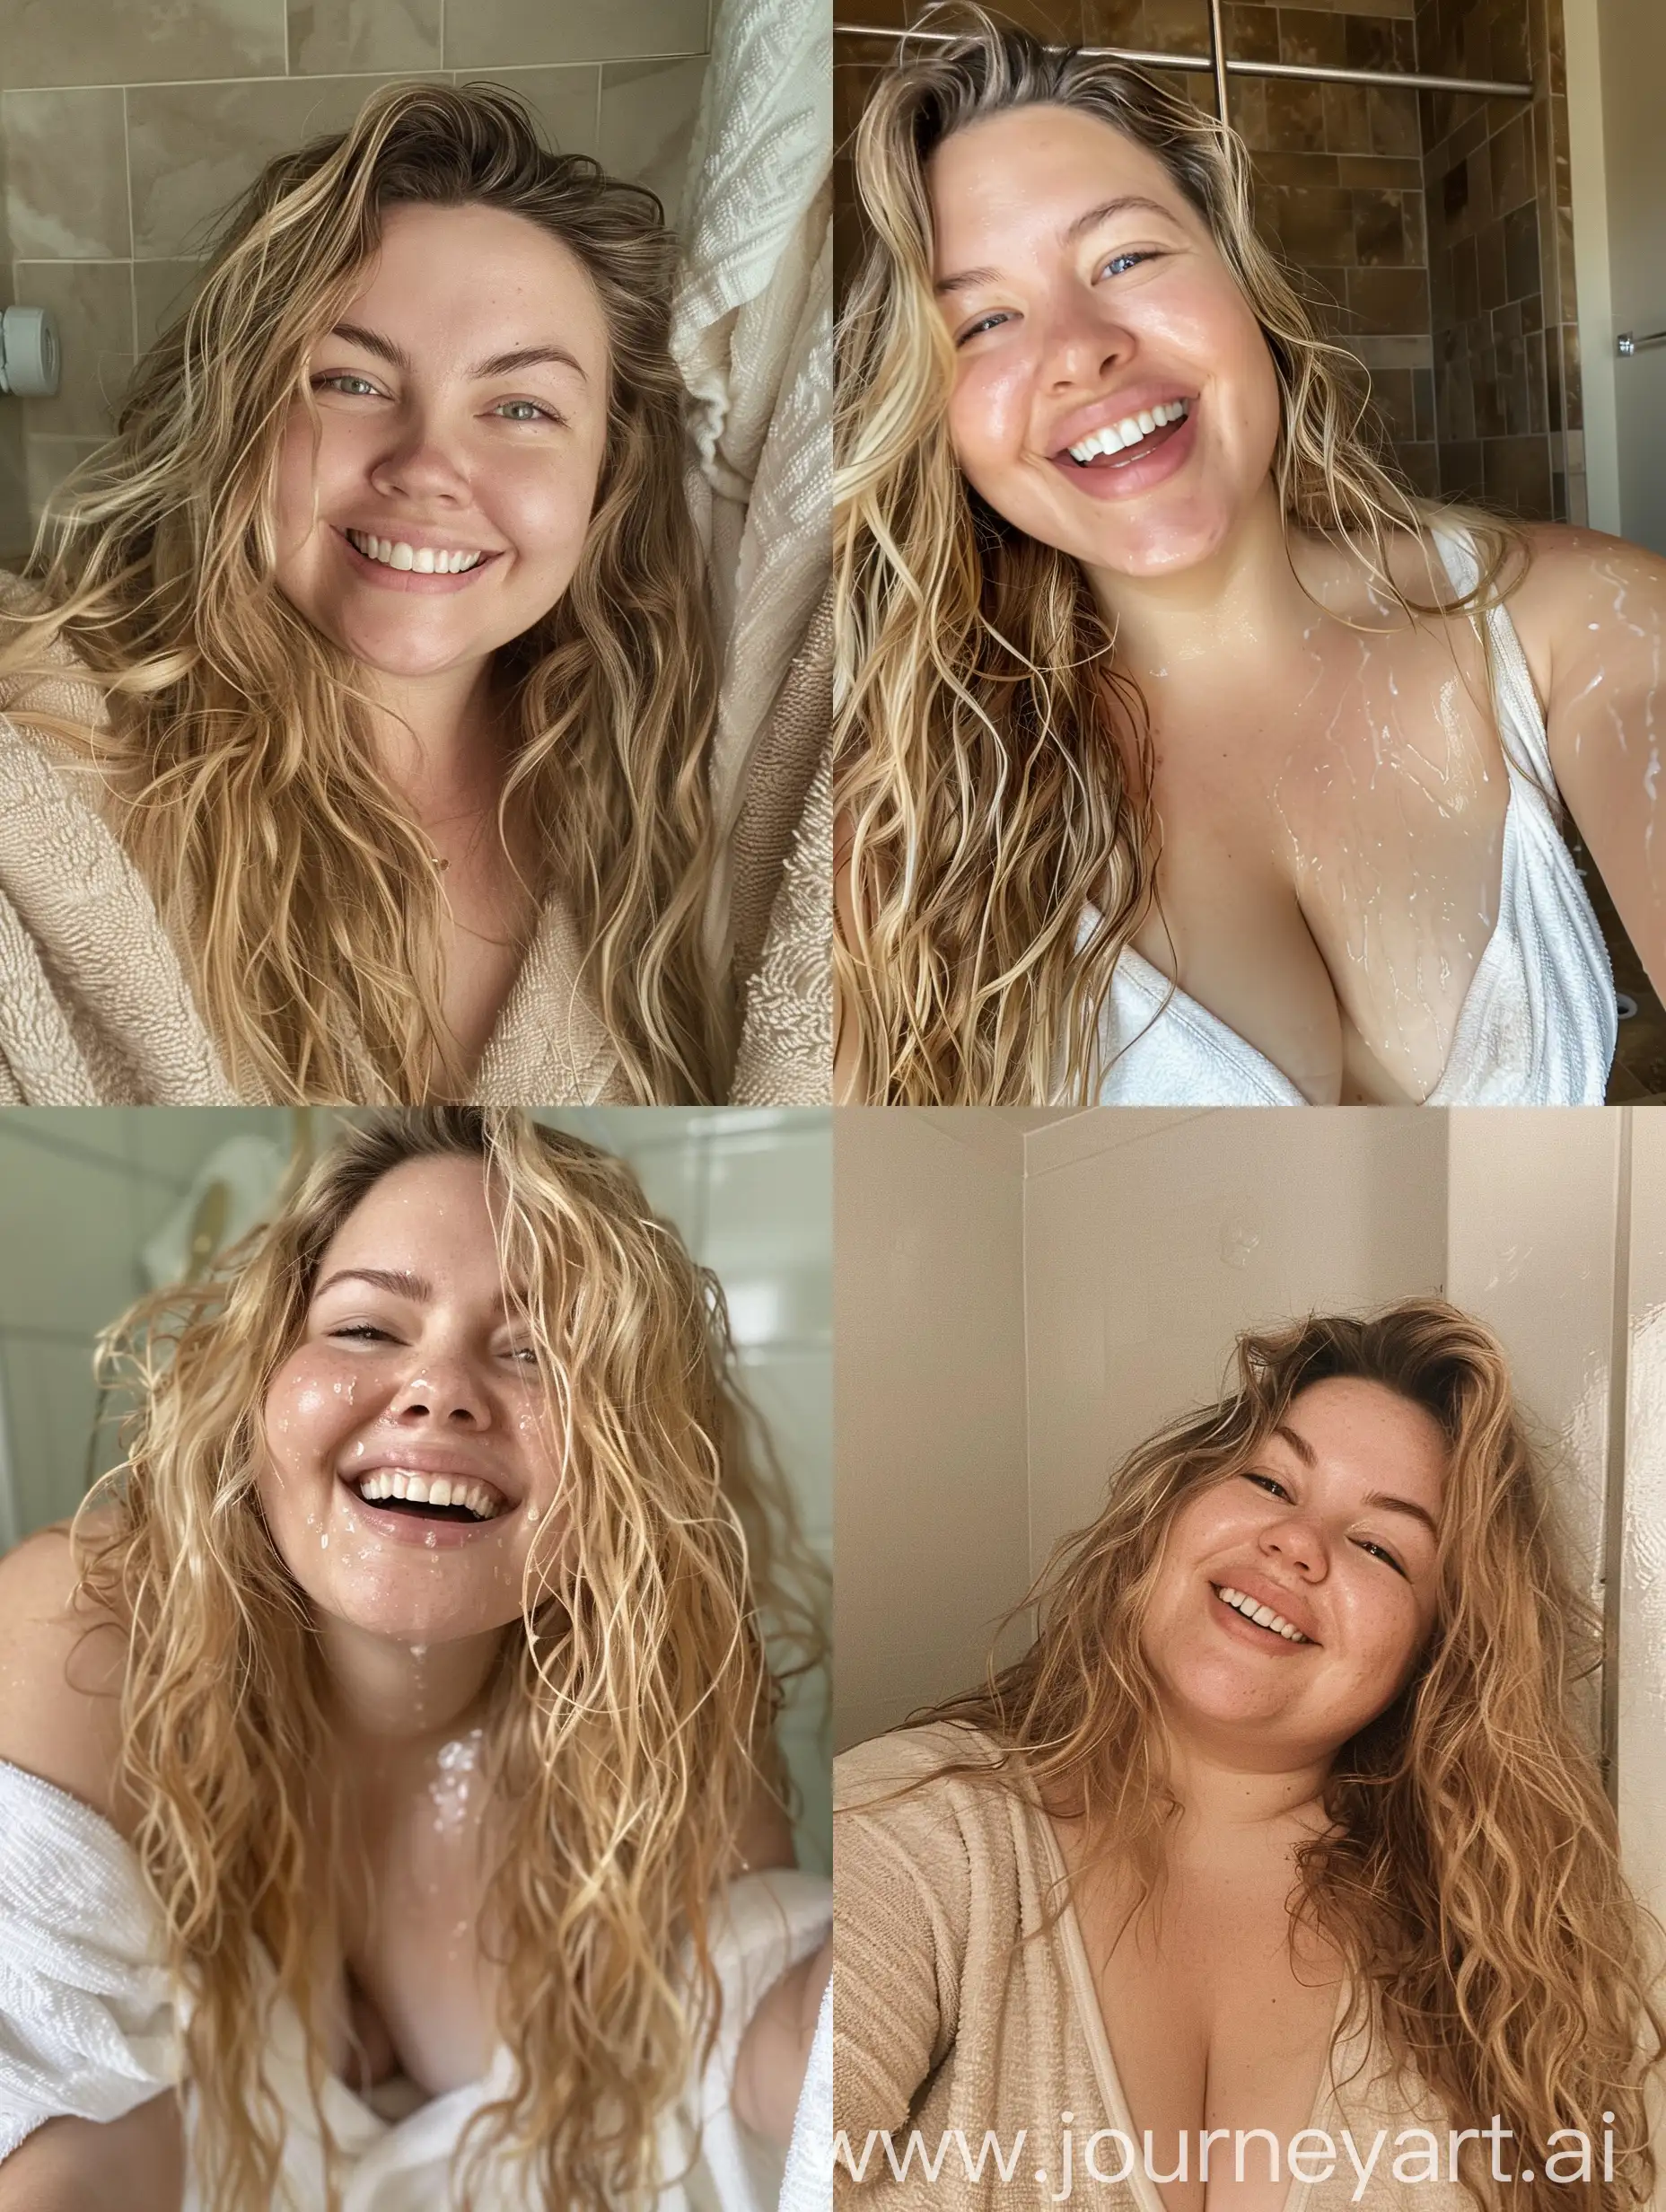 Joyful-Bathroom-Selfie-of-Smiling-Blonde-Woman-with-Long-Hair